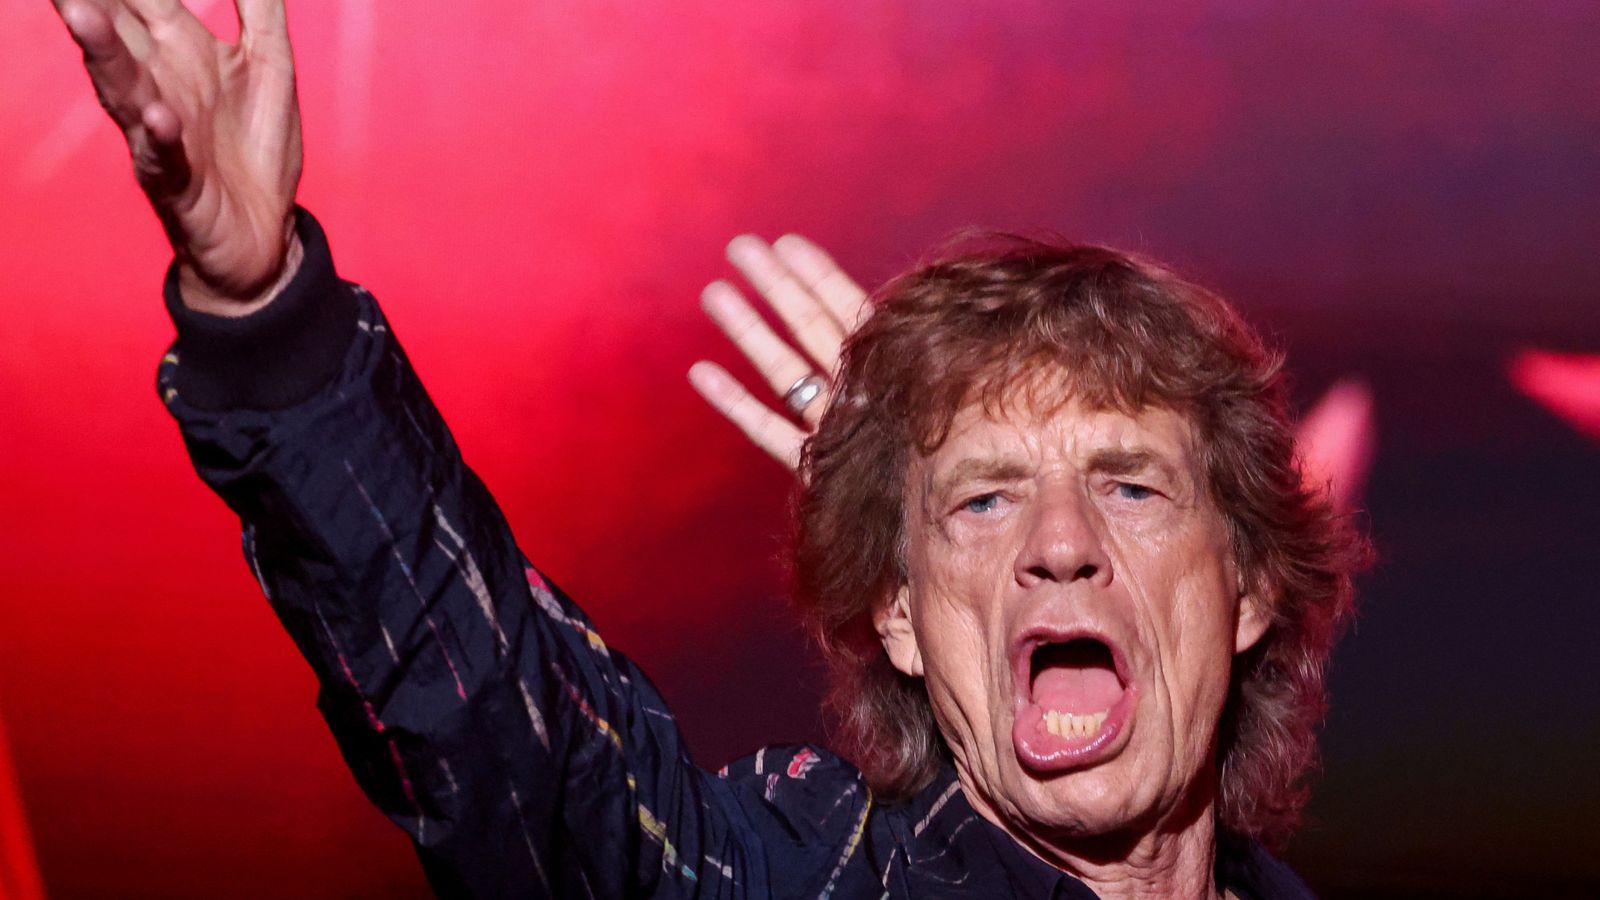 Предишният каталог на Rolling Stones може да бъде даден за благотворителност, казва Мик Джагър